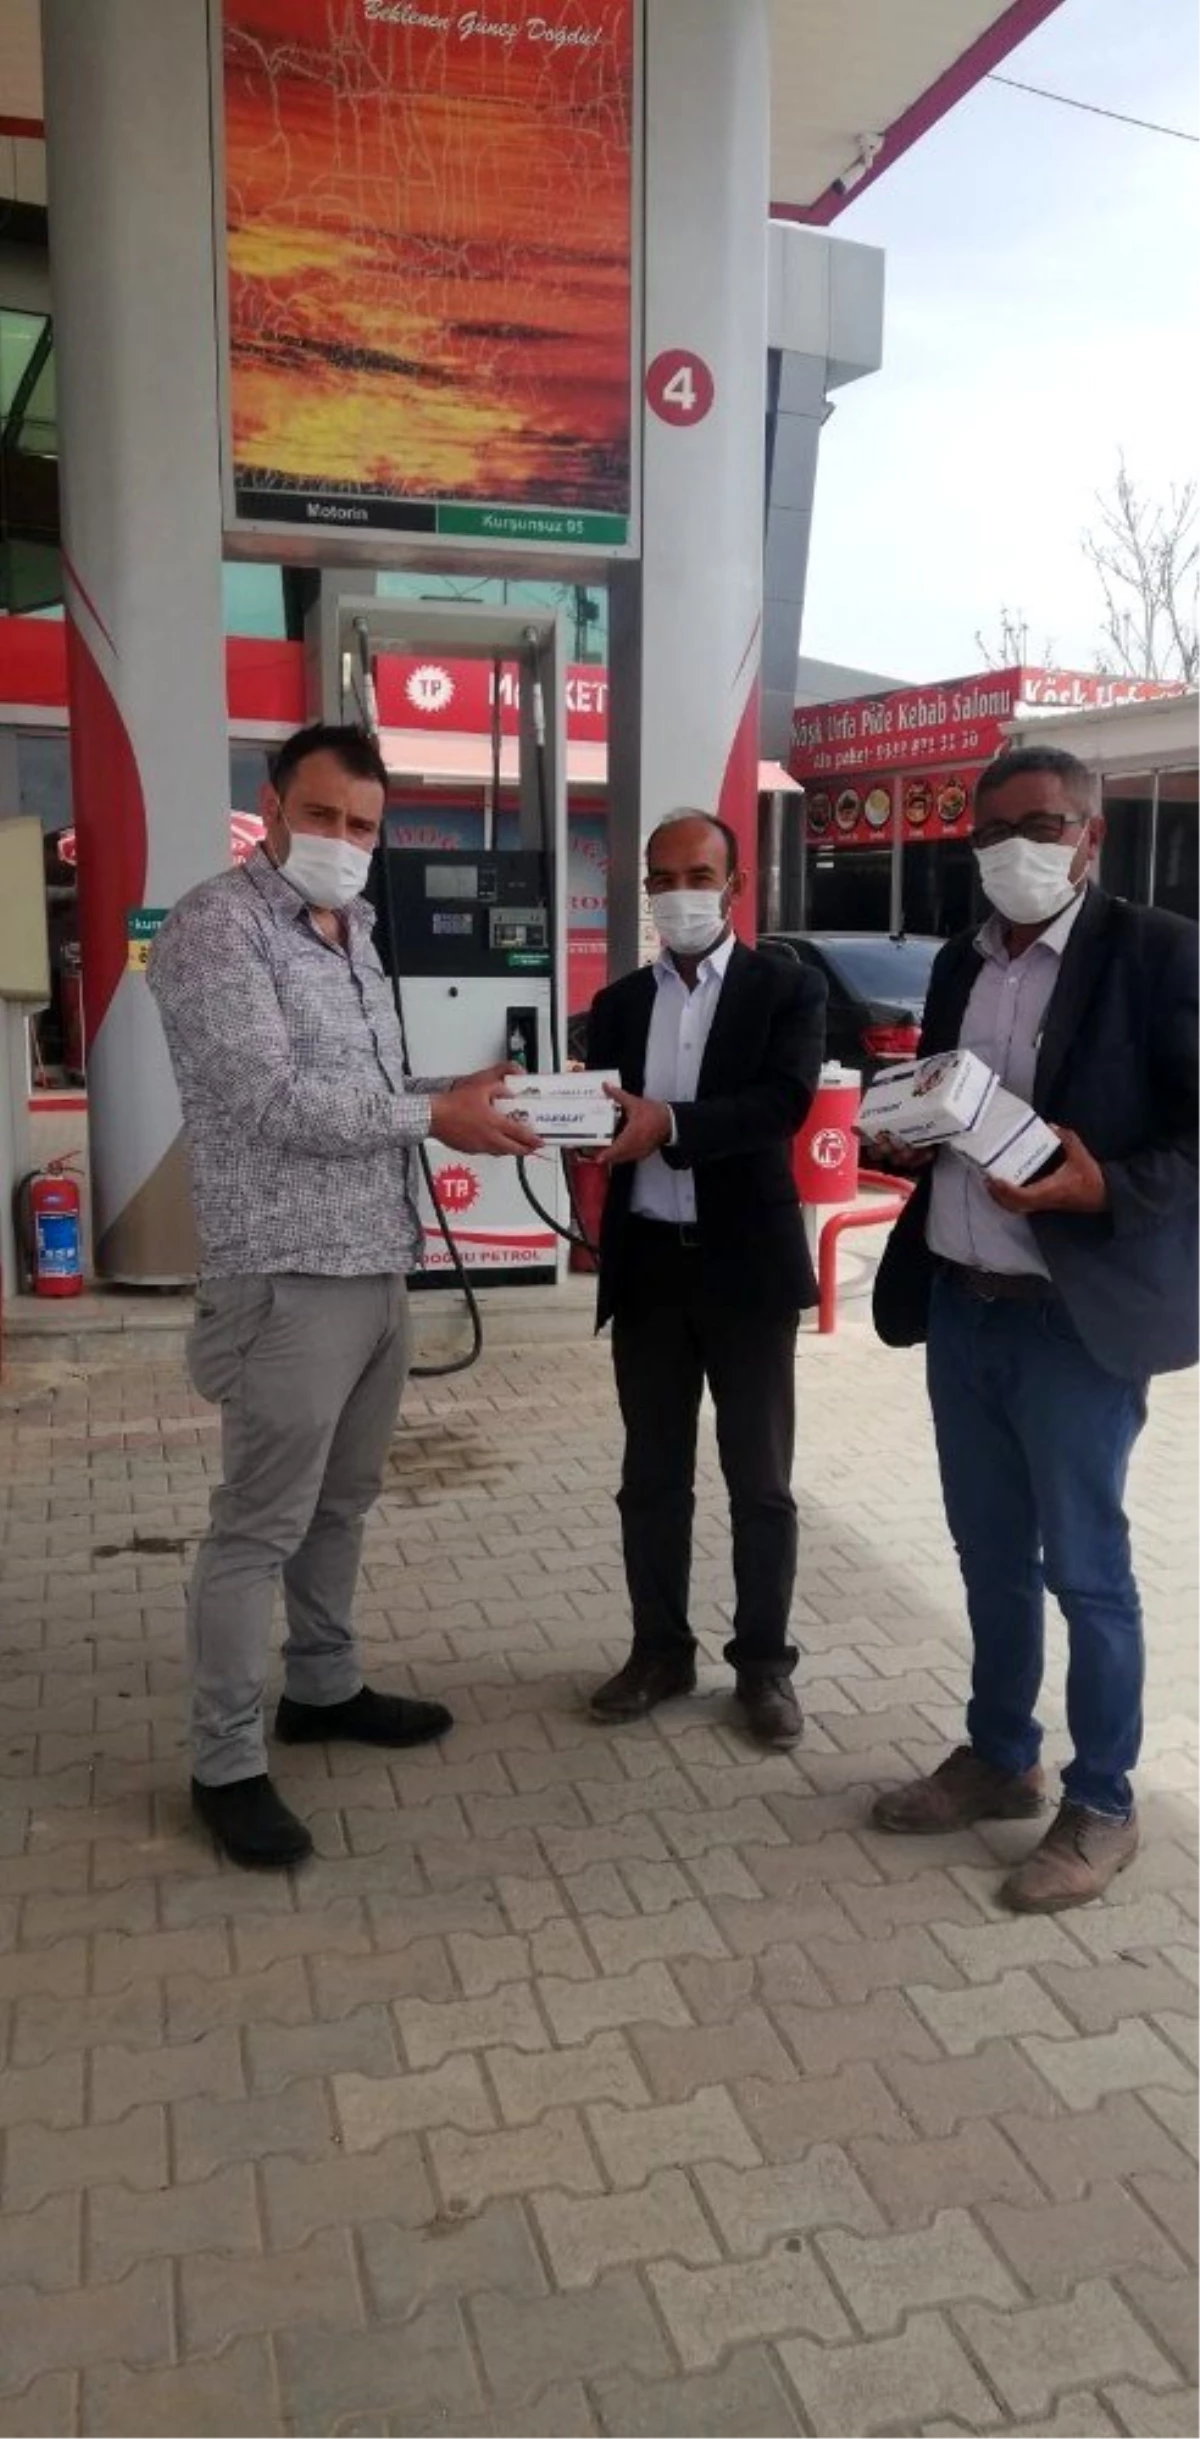 ÇEL-DER tarafından 10 bin ücretsiz maske dağıtımı gerçekleştirildi